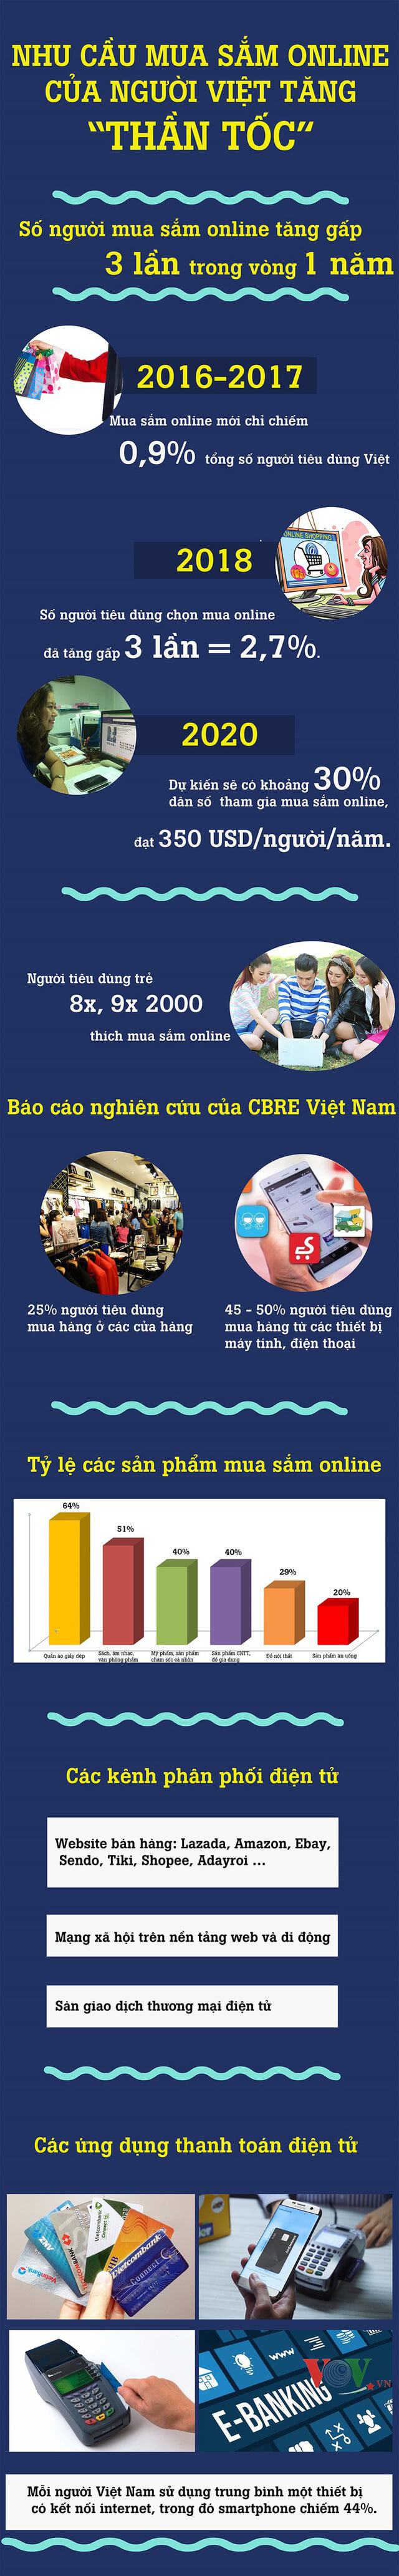 nhu cầu mua sắm online tại Việt Nam